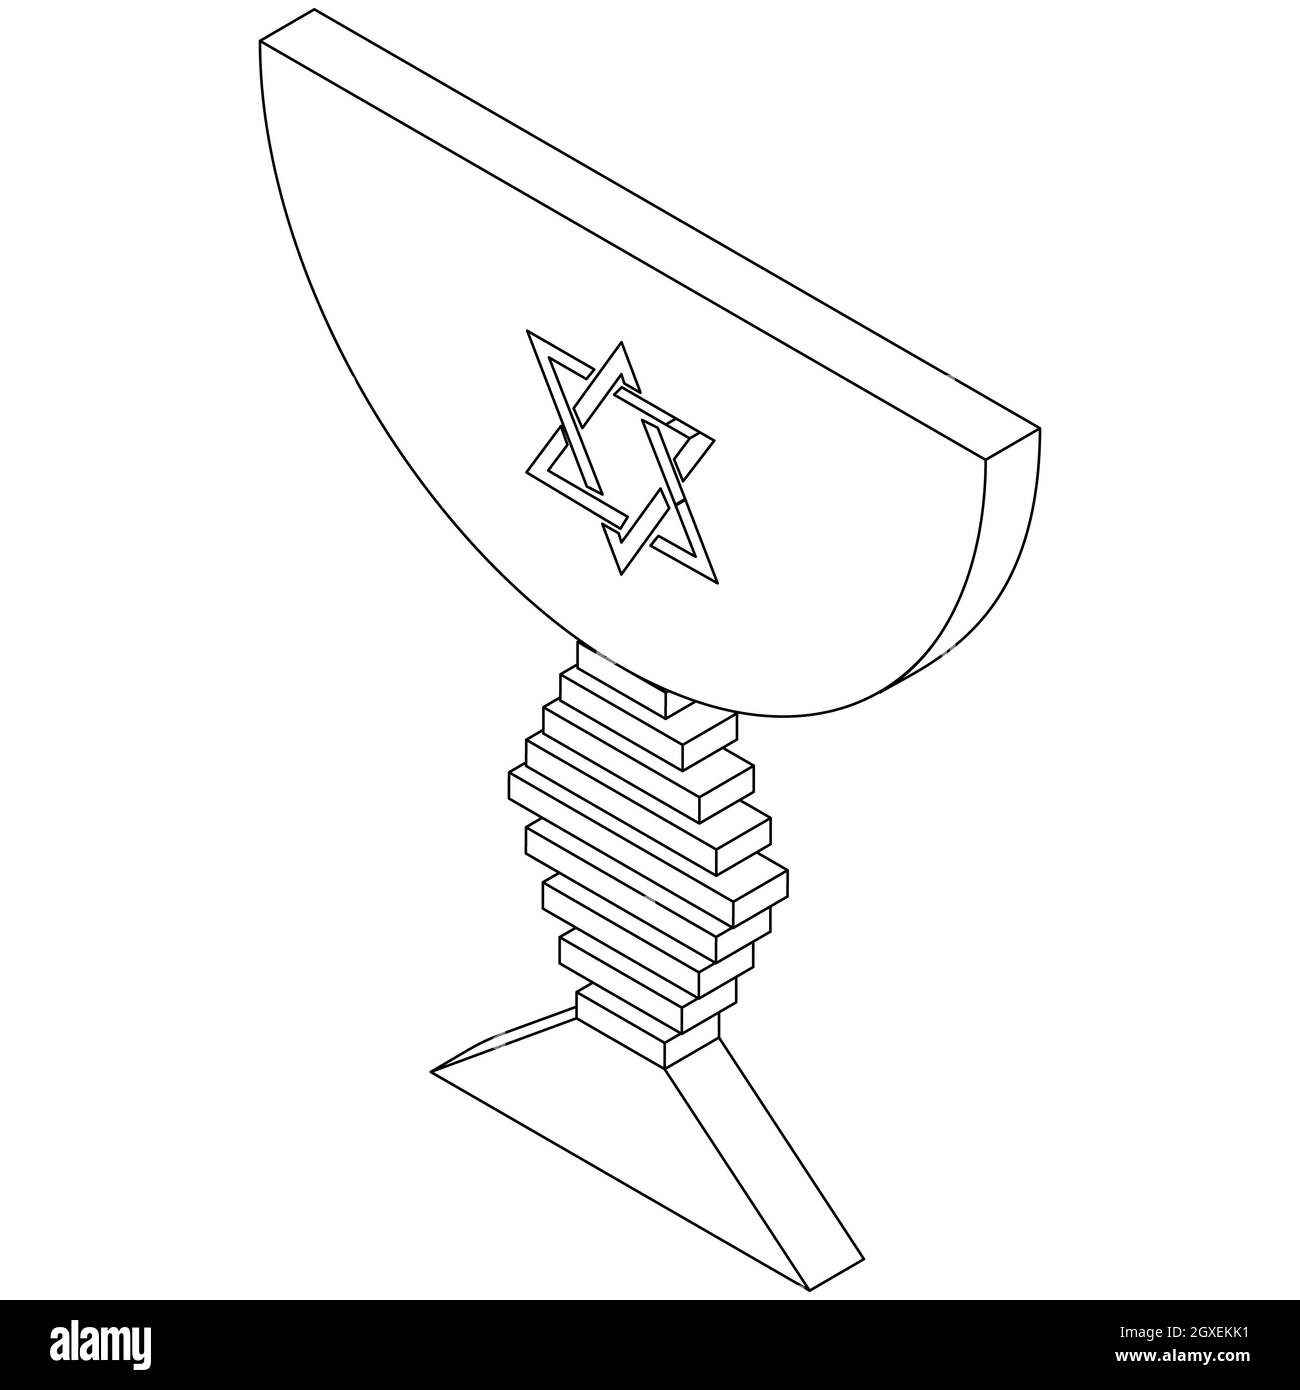 Icona della ciotola giudaica in stile 3d isometrico isolata su sfondo bianco Foto Stock